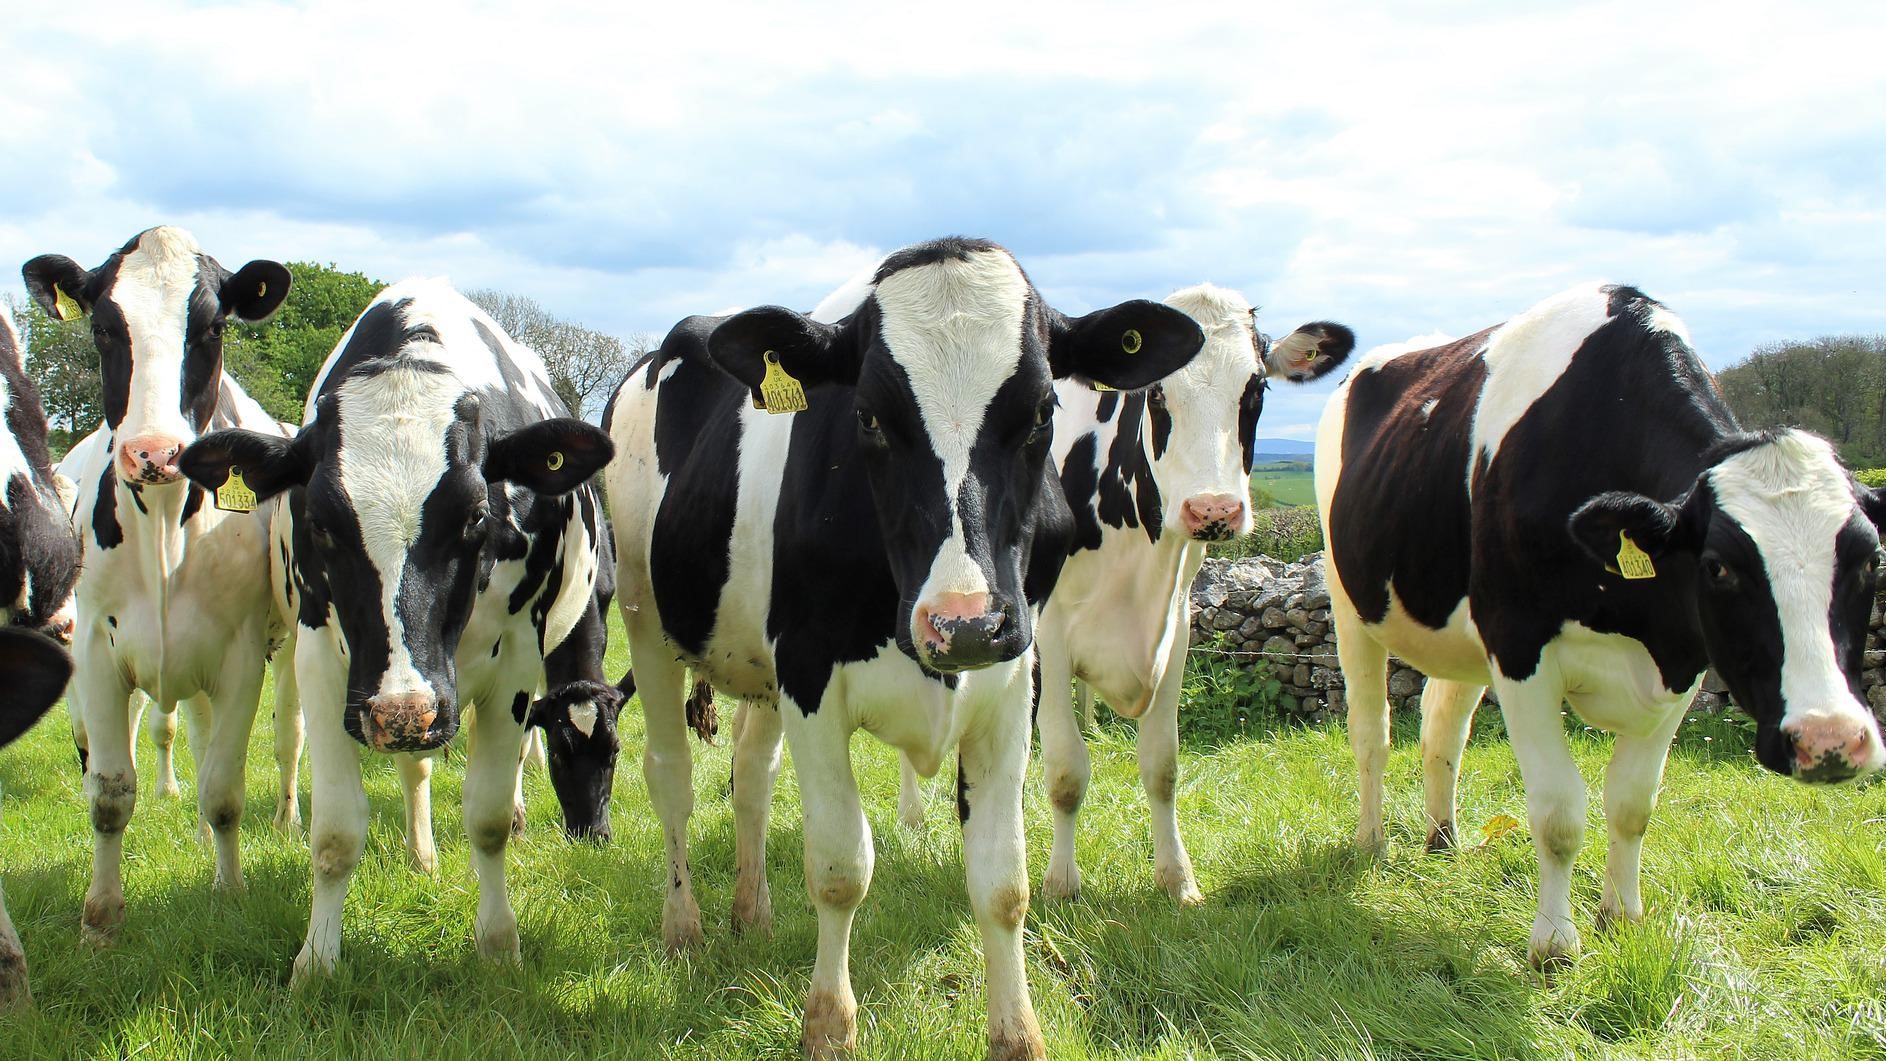 Holstein cows on grass